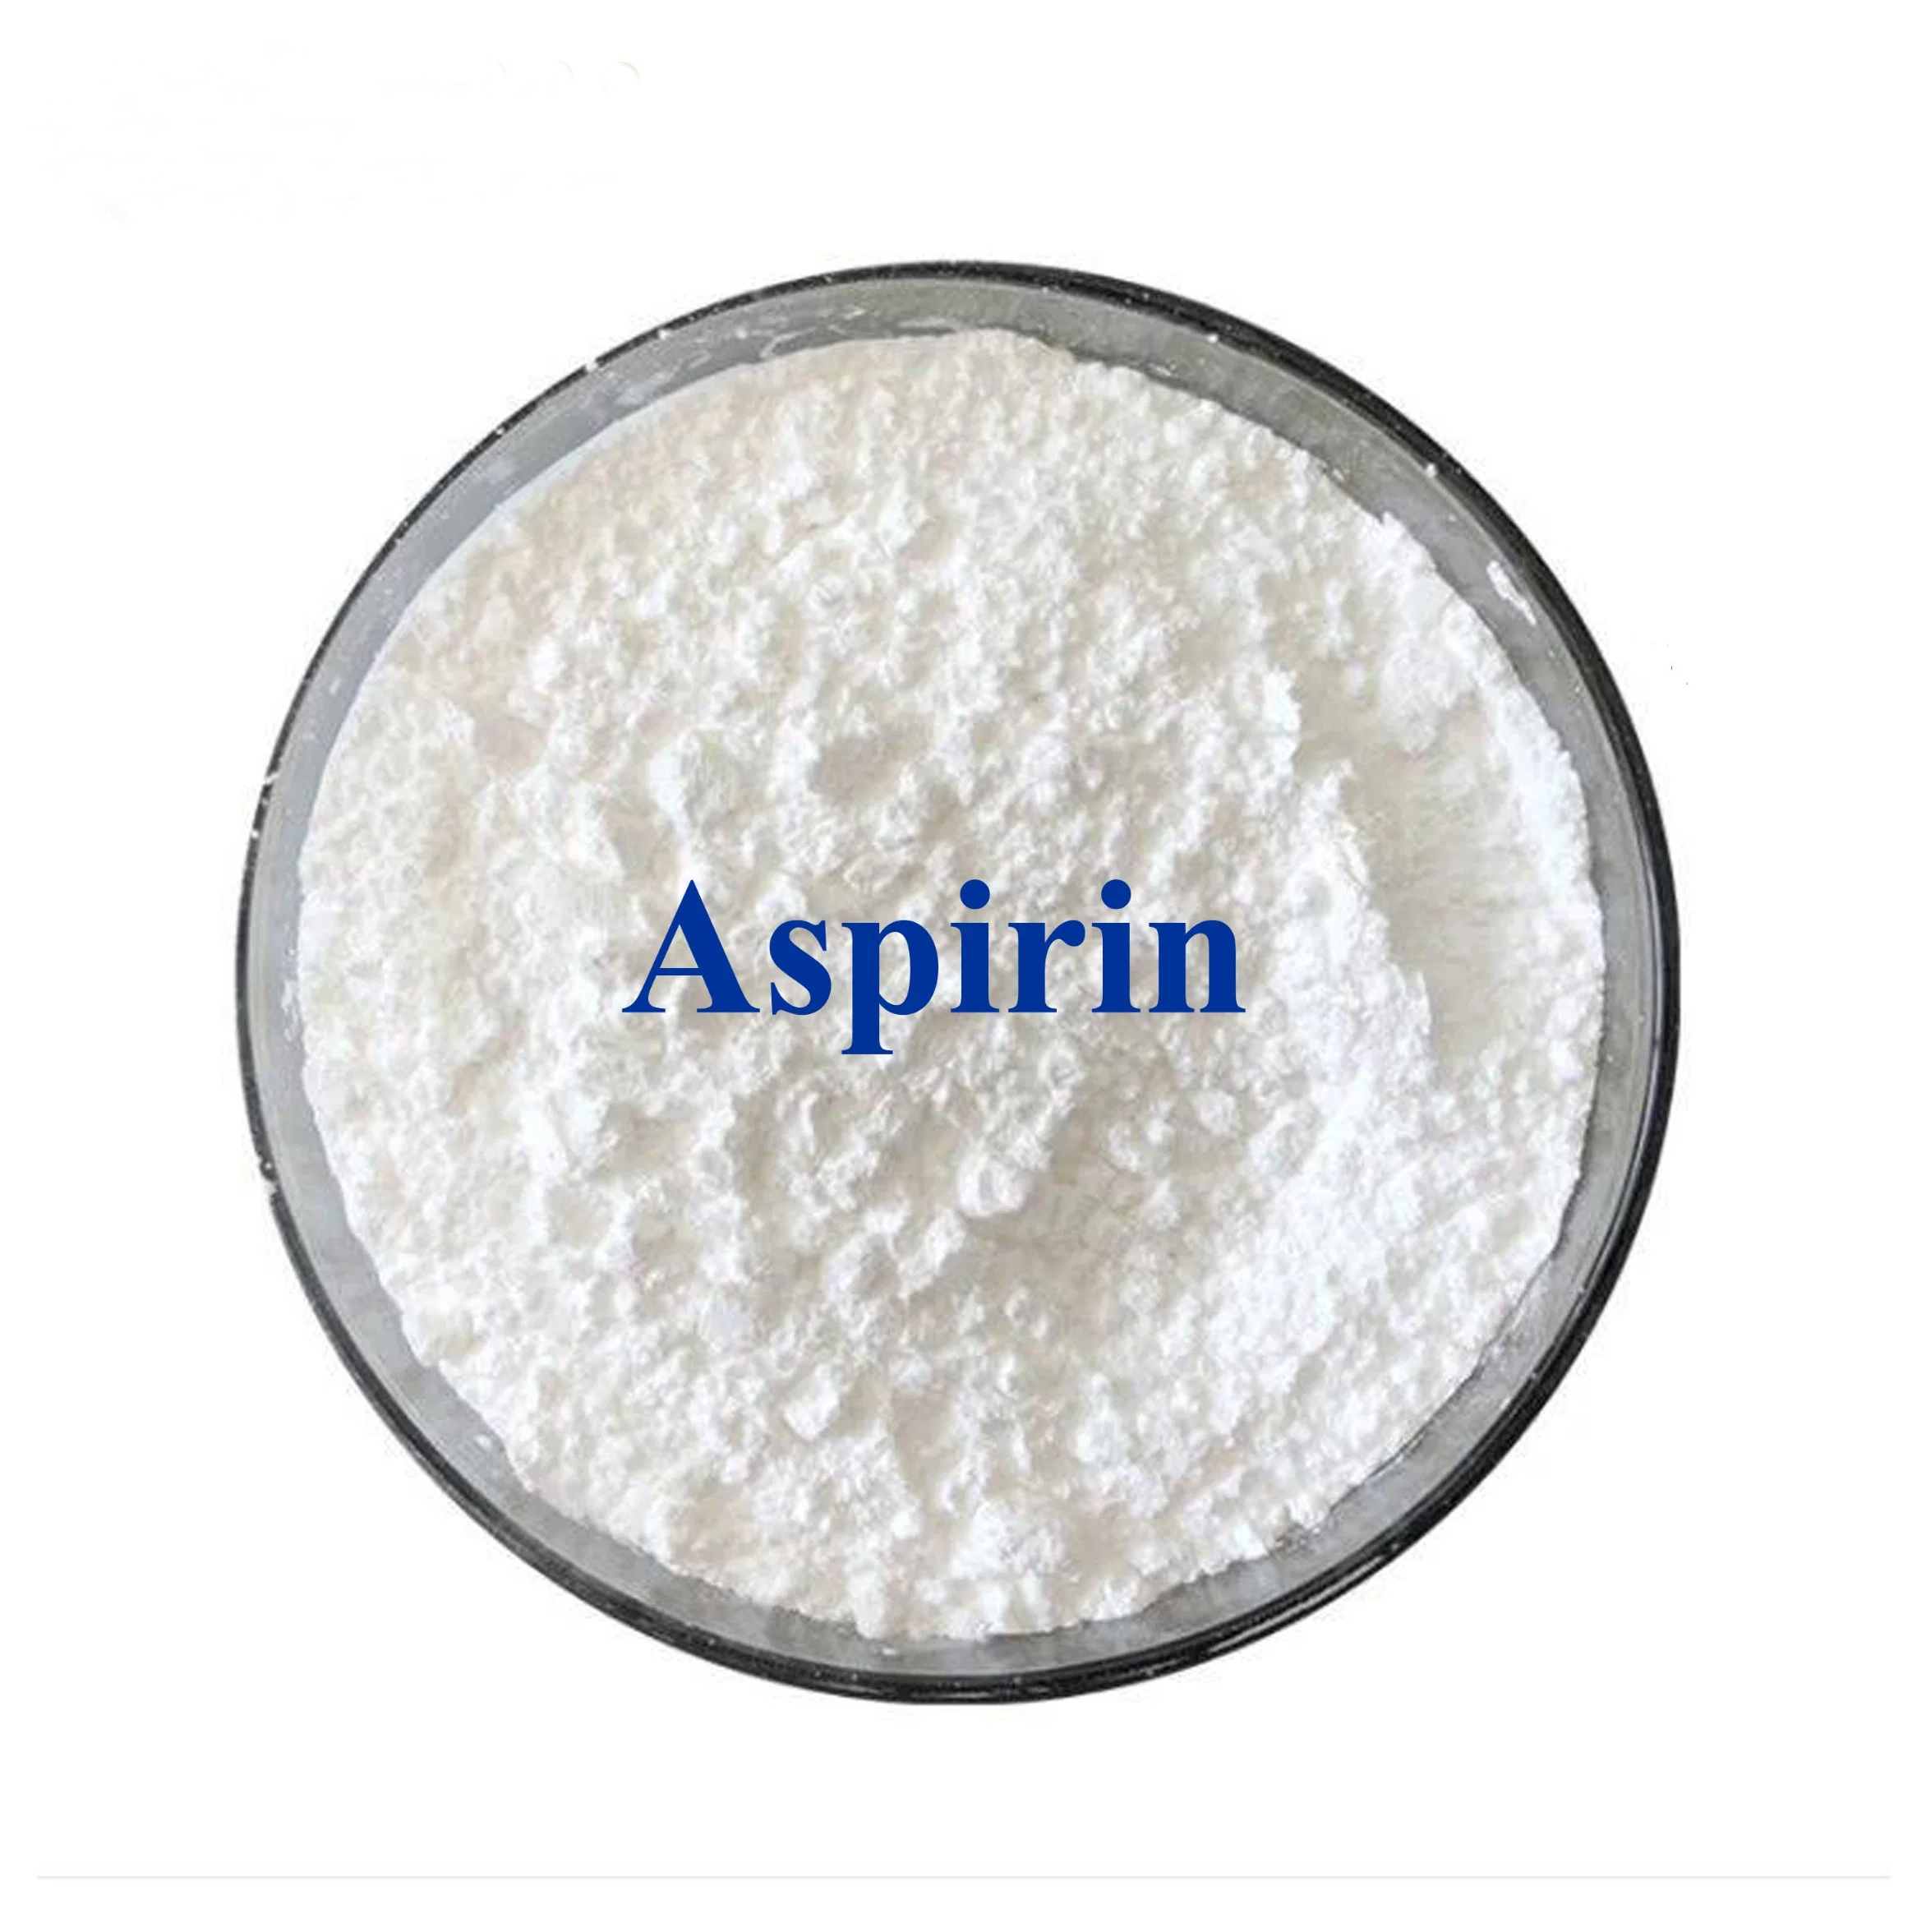 Asprin